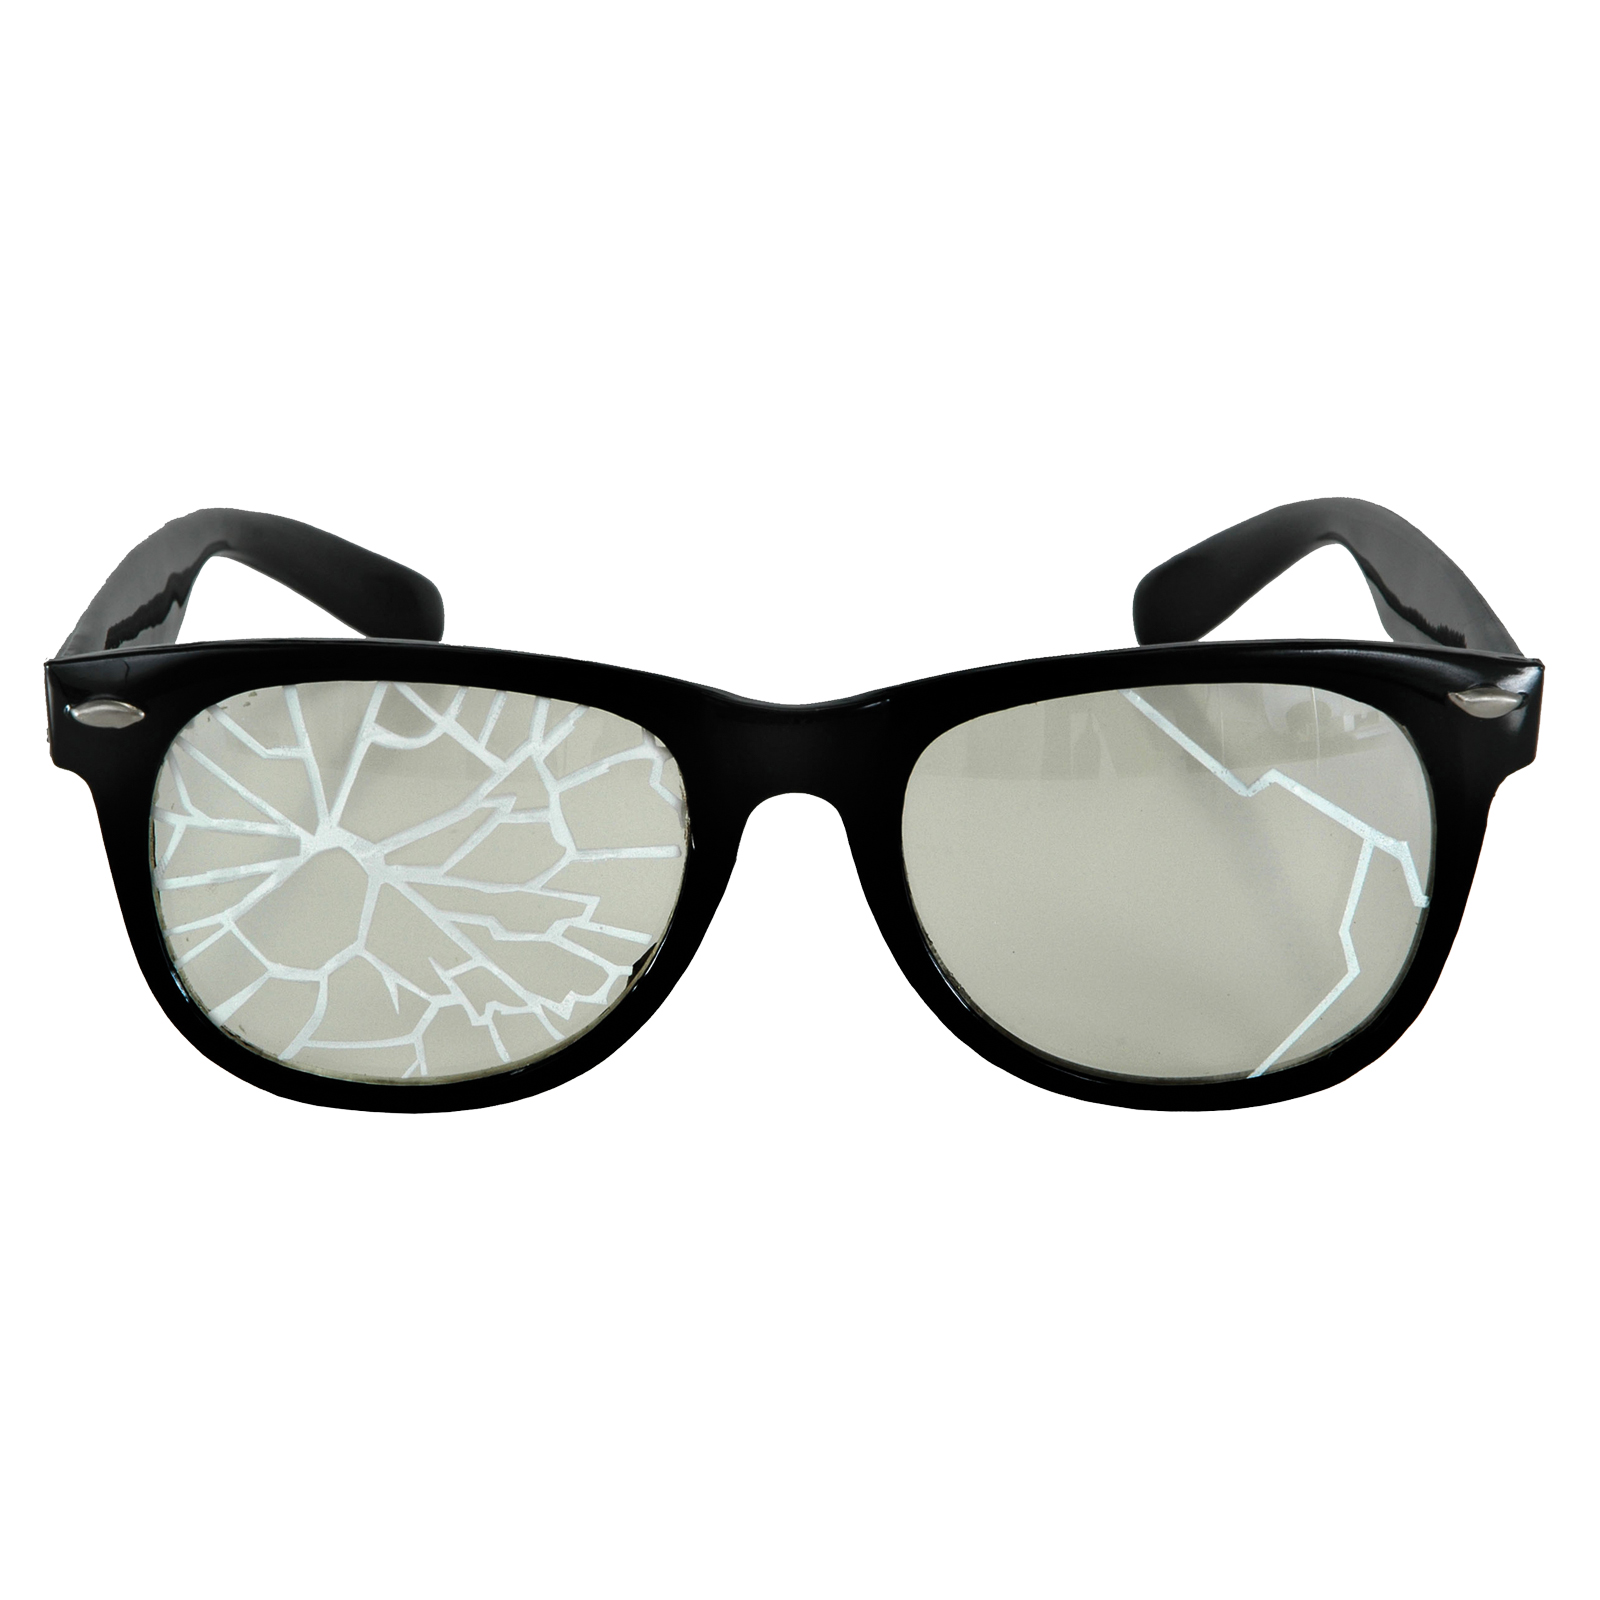 Glasses Broken Black Costume Accessory